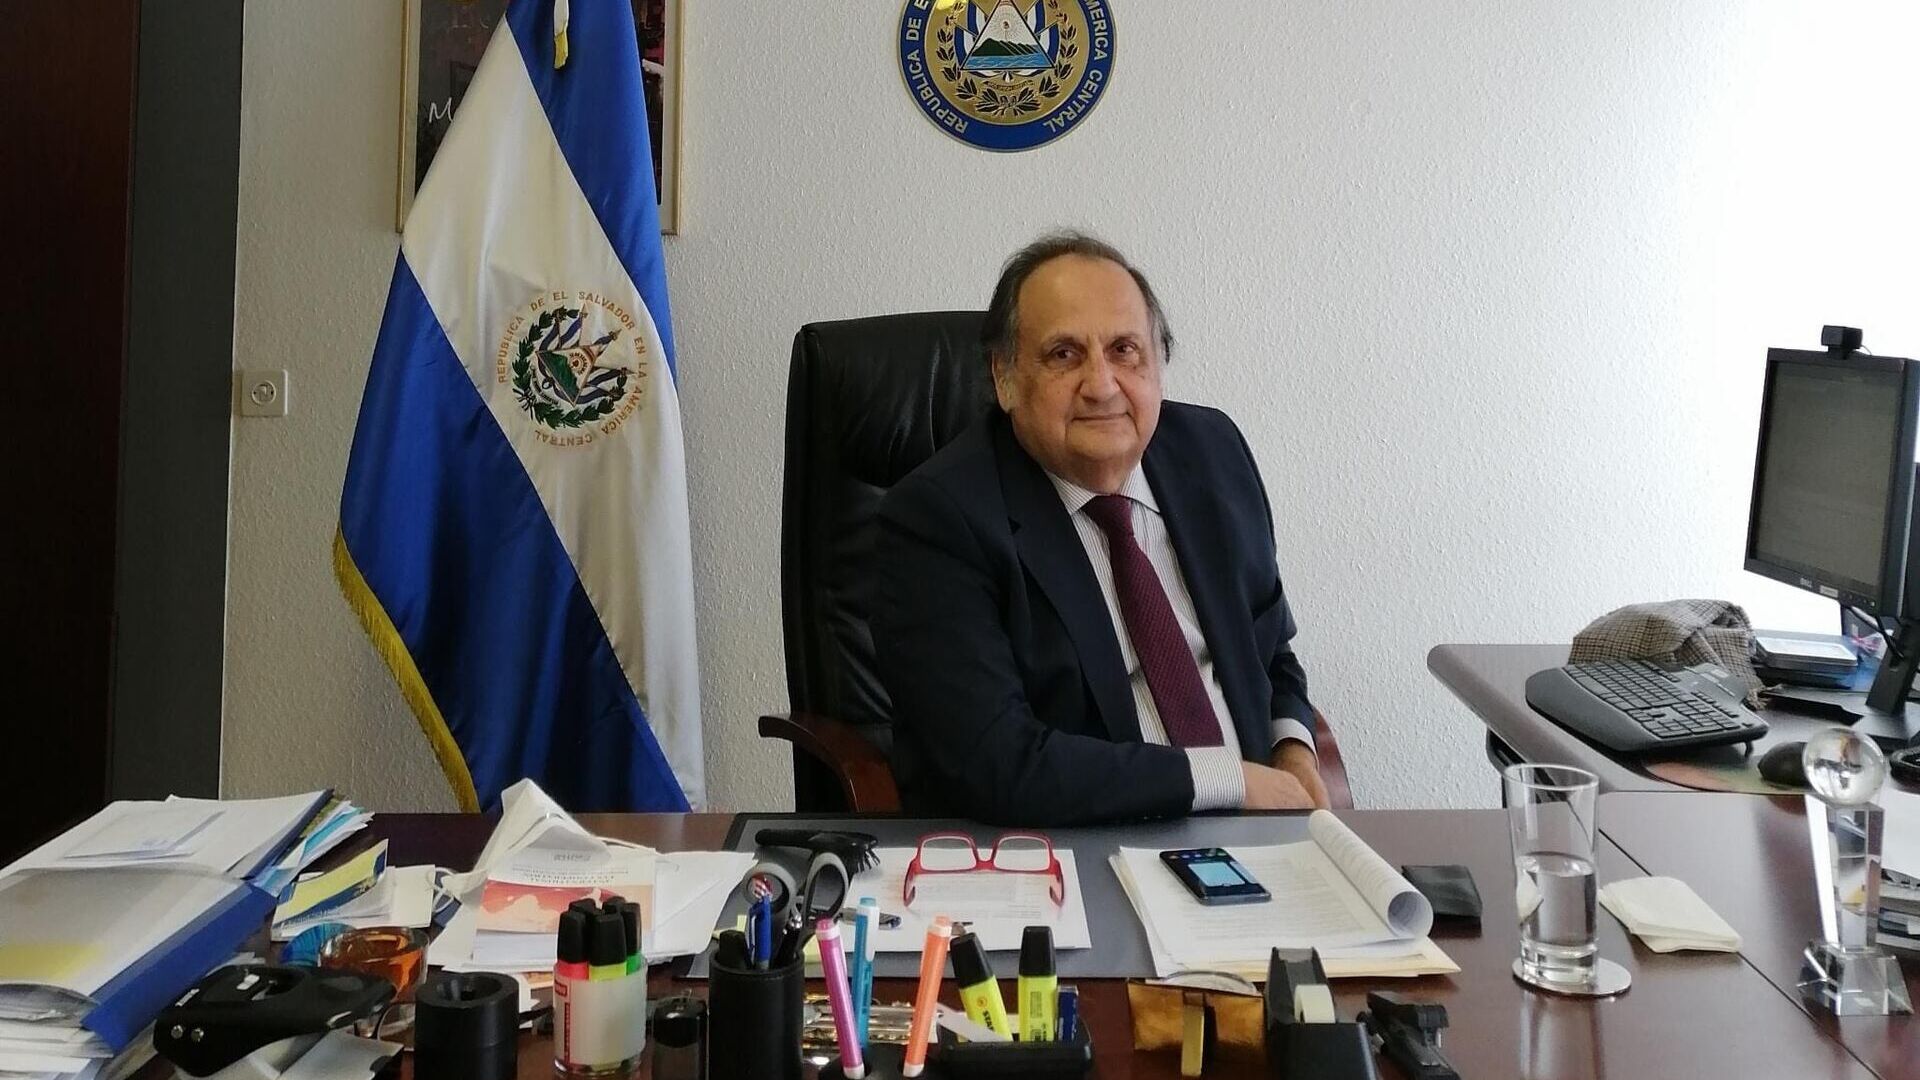 Joaquín Alexander Maza Martelli este ambasadorul Misiunii Permanente a Republicii El Salvador la Oficiul Națiunilor Unite la Geneva